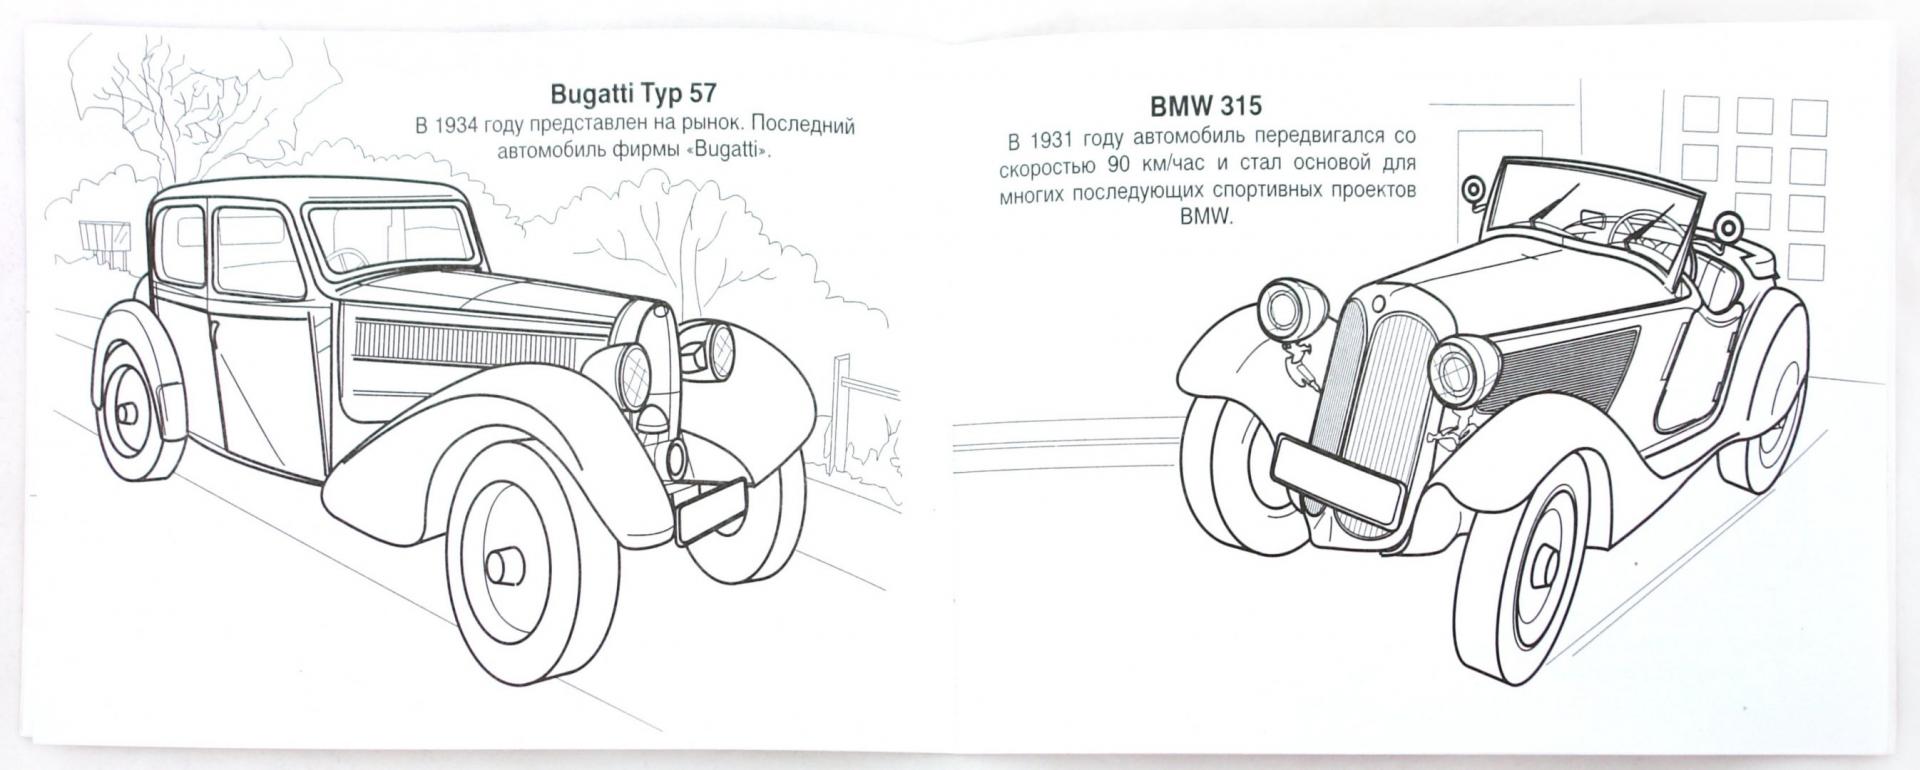 Иллюстрация 1 из 16 для Старинные машины | Лабиринт - книги. Источник: Лабиринт